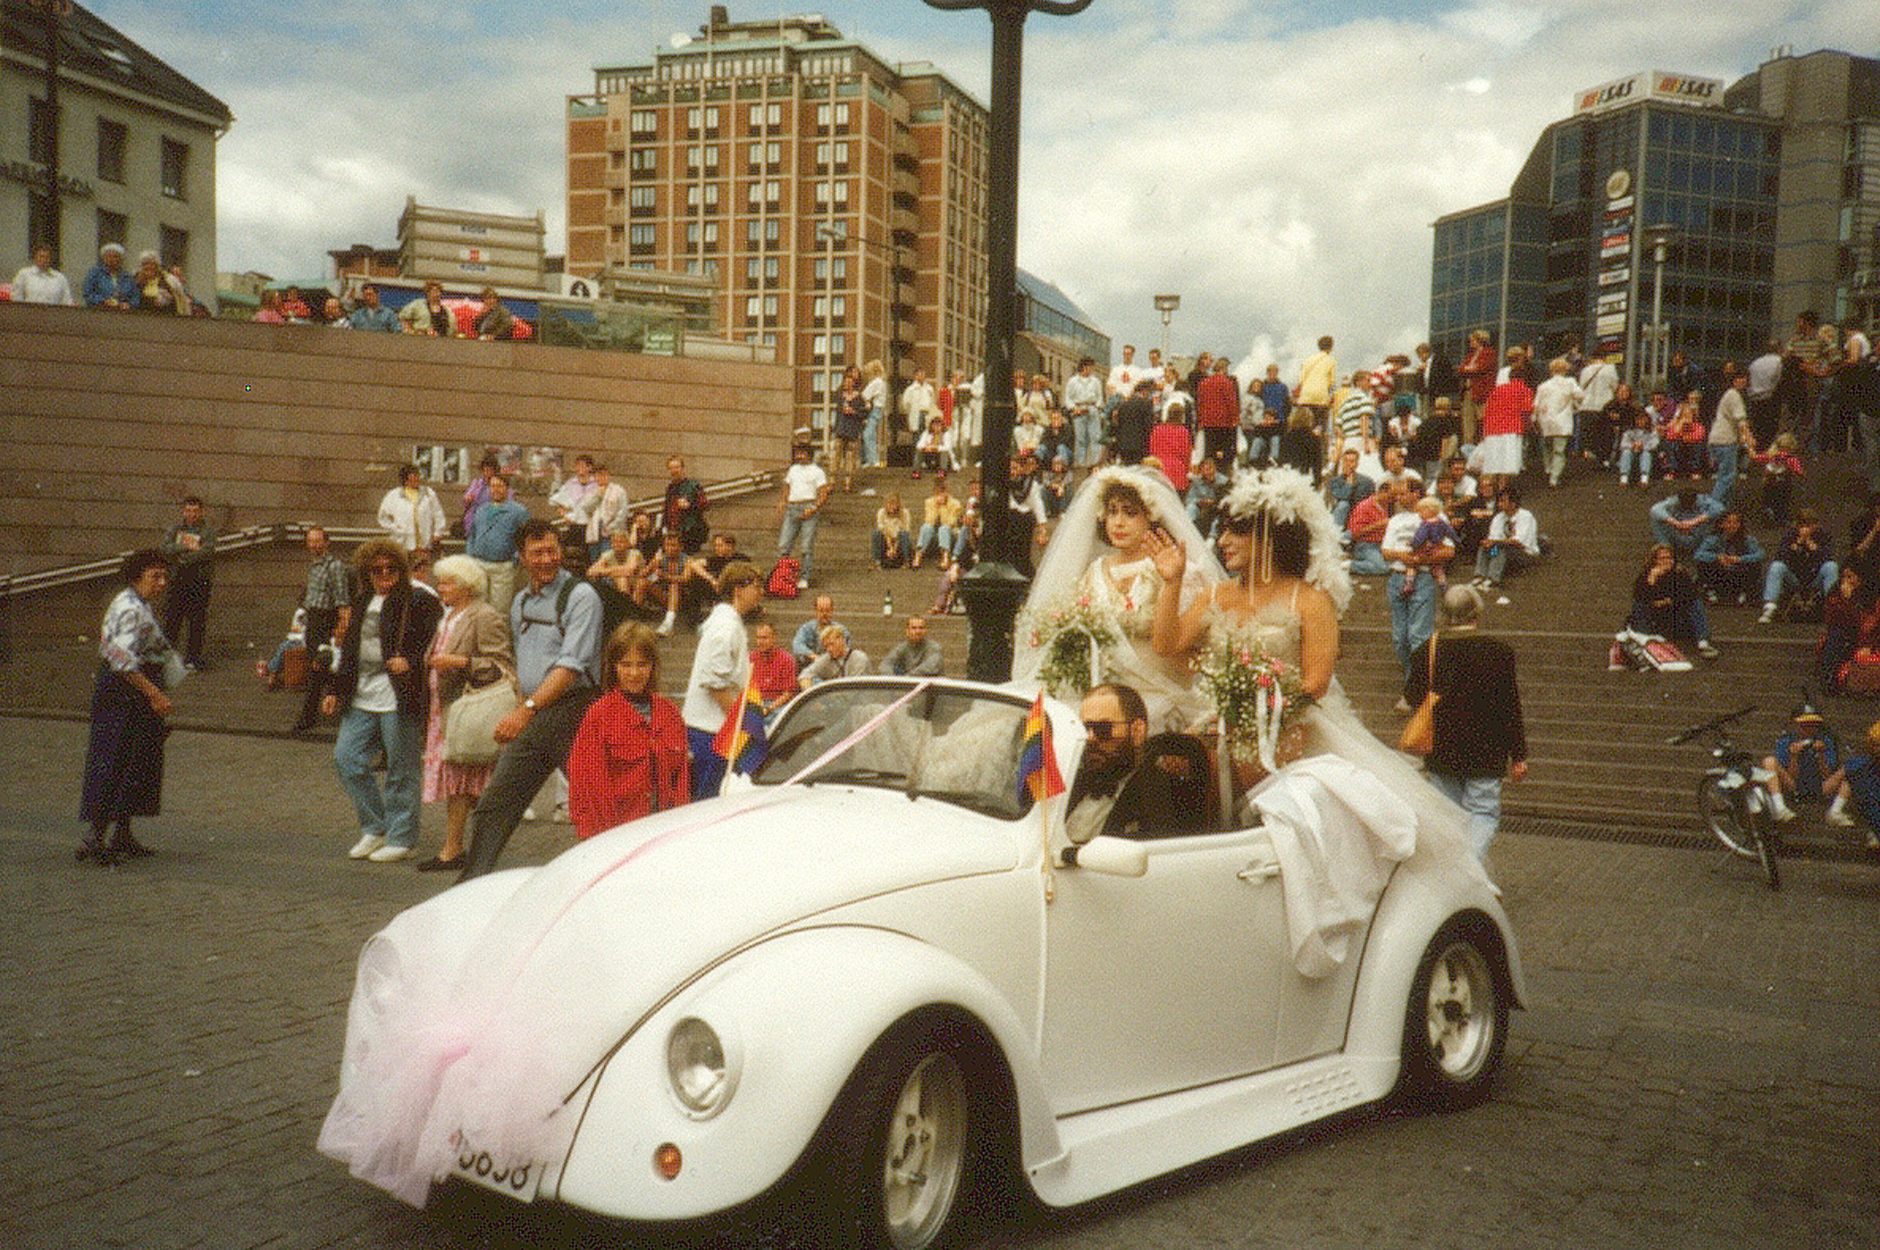 bilde av to personer i brudekjole sammen i åpen bil. 